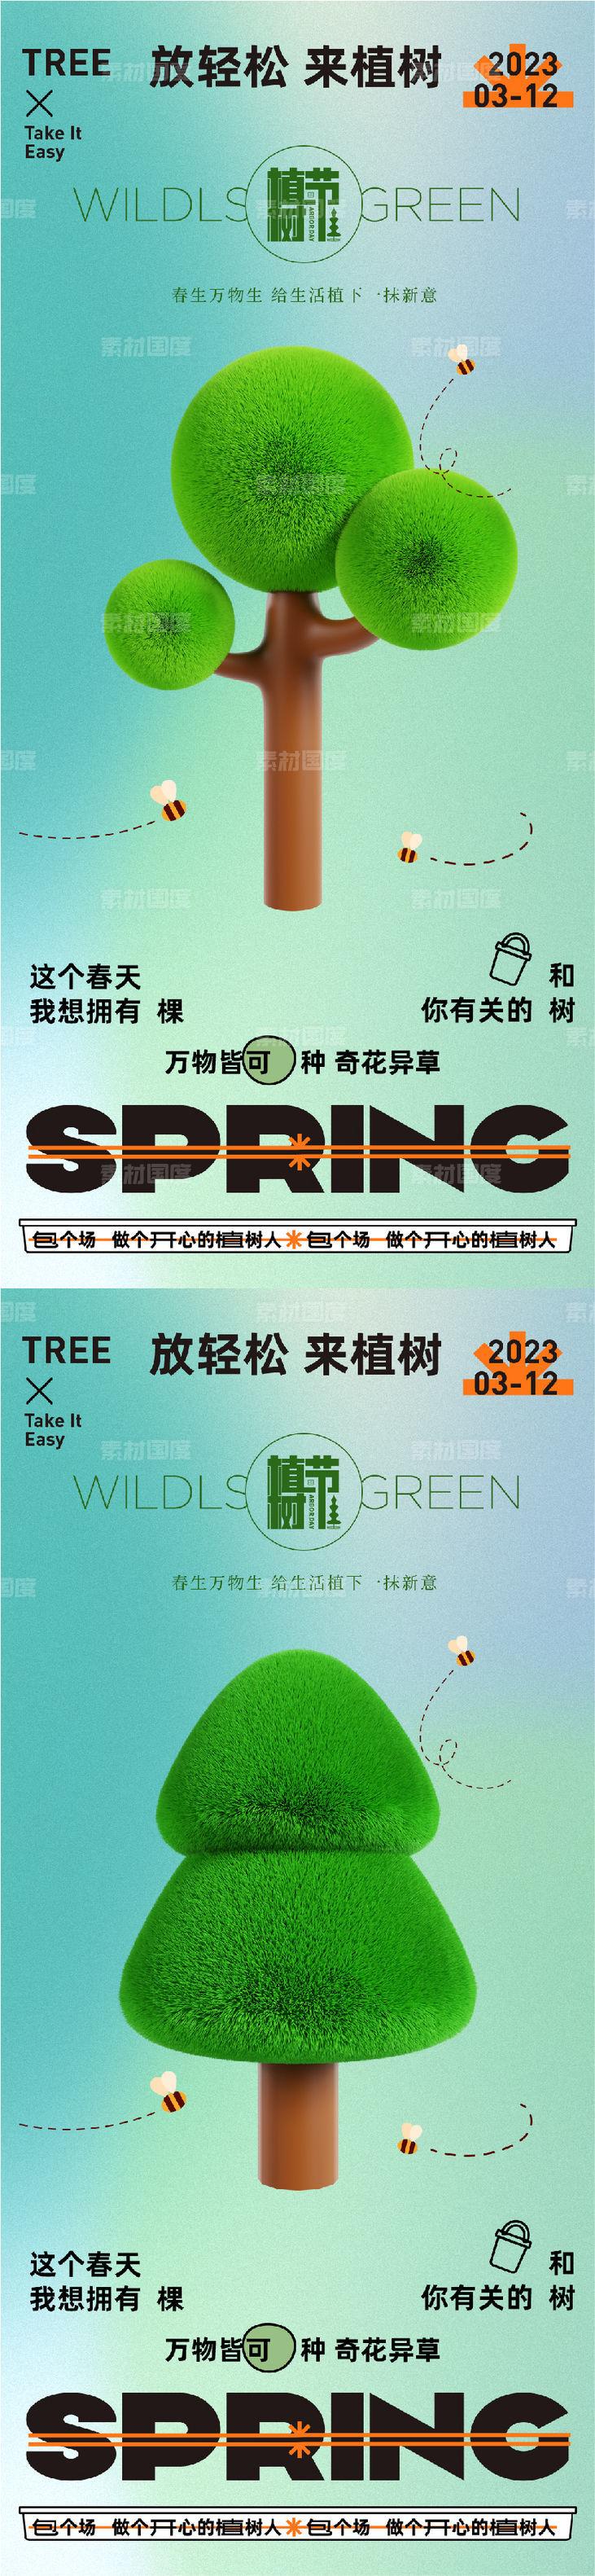 312创意植树节宣传海报